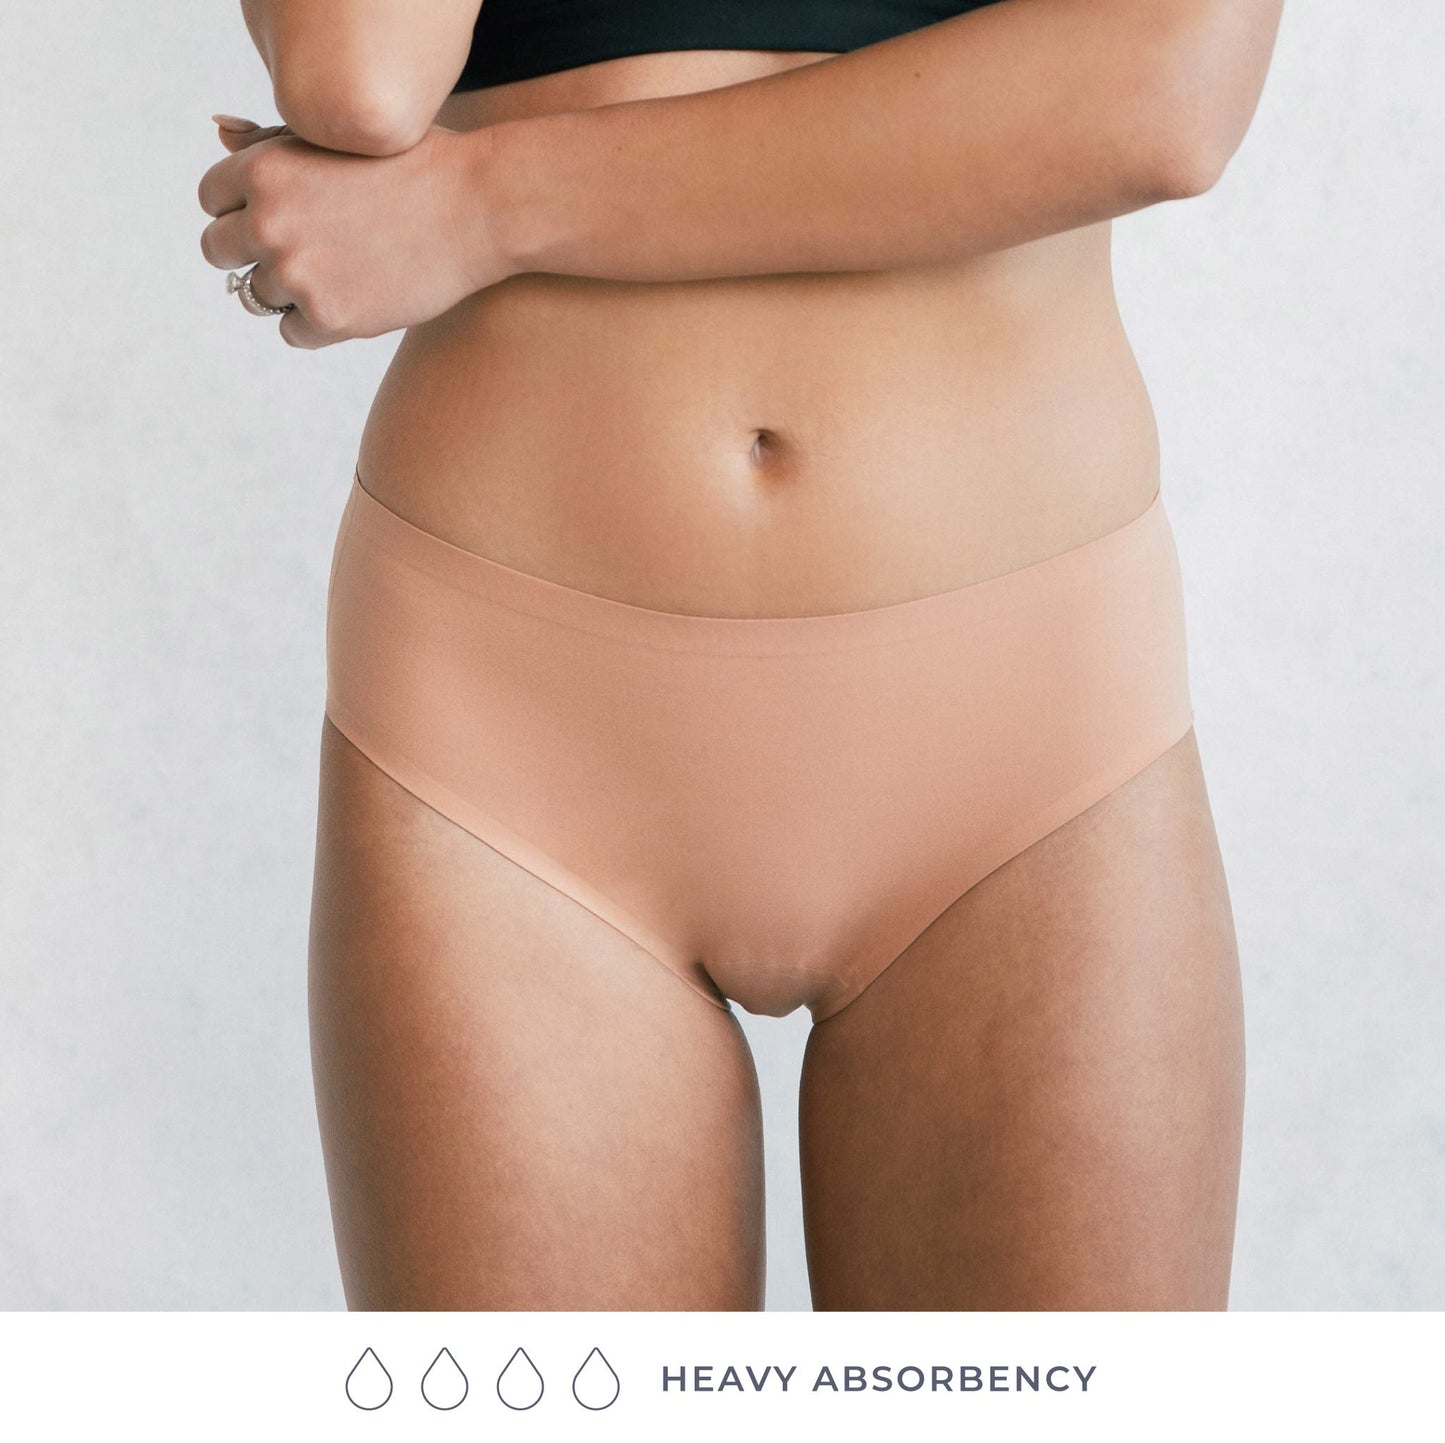 Saalt EveryWEAR Heavy Asorbency Brief Leak Proof Period Underwear, Medium -  CVS Pharmacy